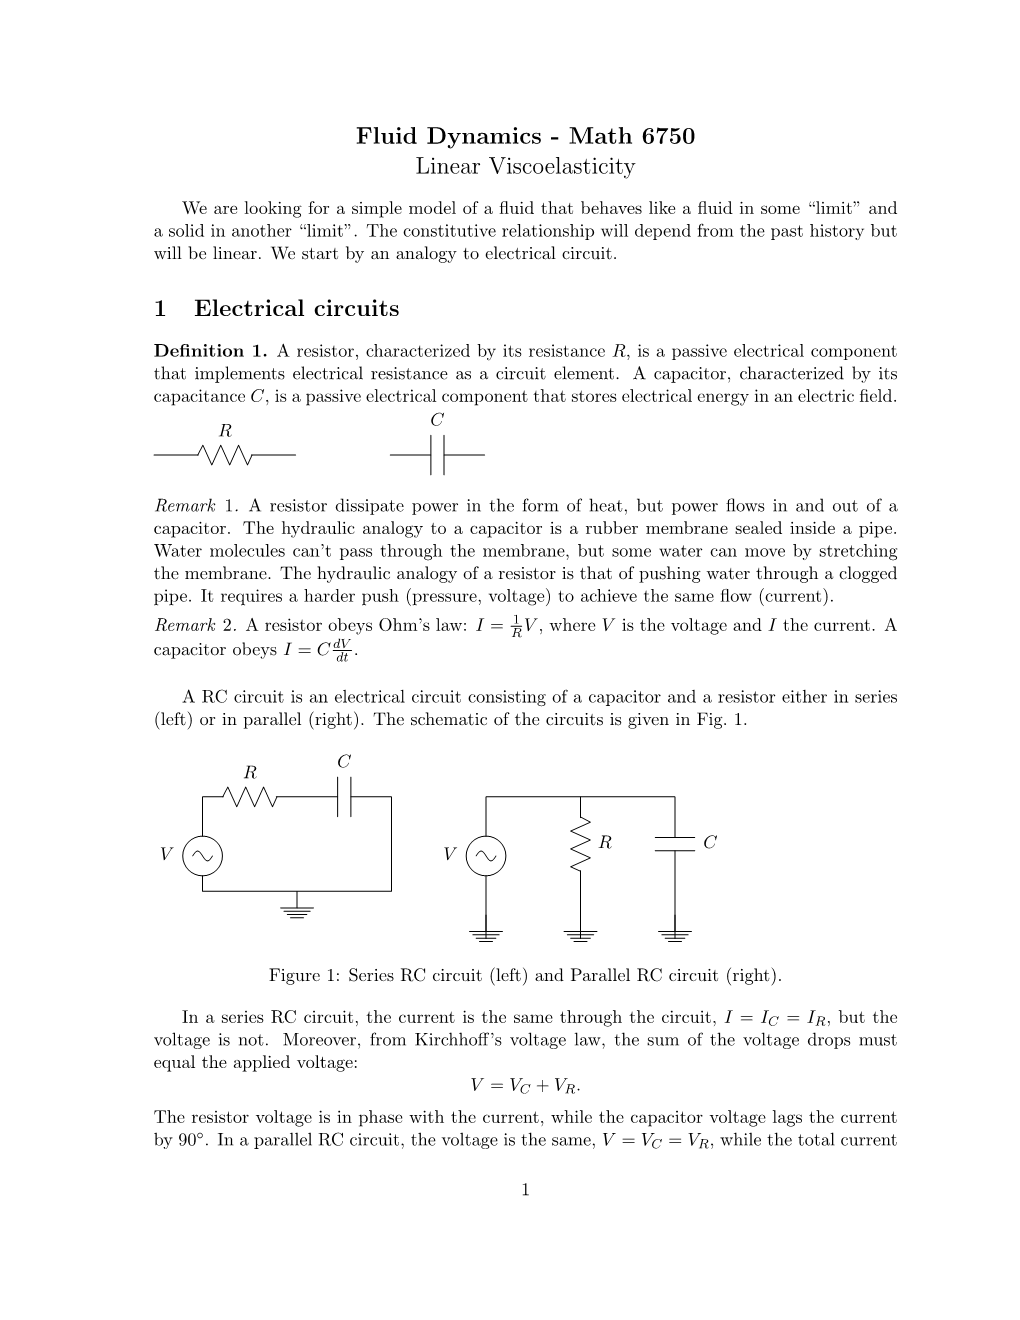 Fluid Dynamics - Math 6750 Linear Viscoelasticity